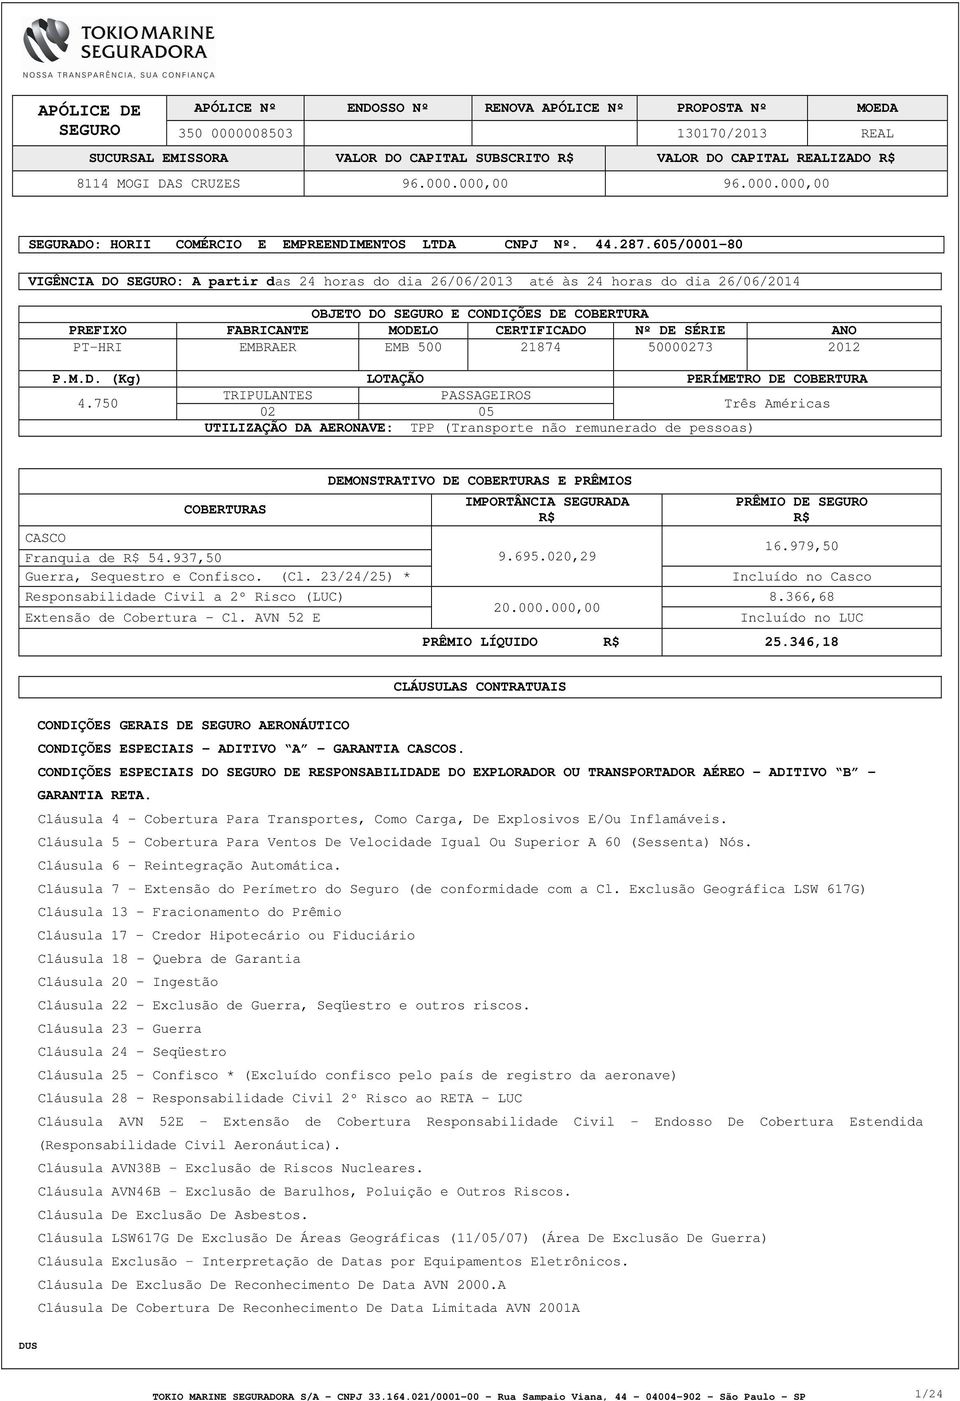 EMBRAER EMB 500 21874 50000273 2012 P.M.D. (Kg) LOTAÇÃO PERÍMETRO DE COBERTURA 4.